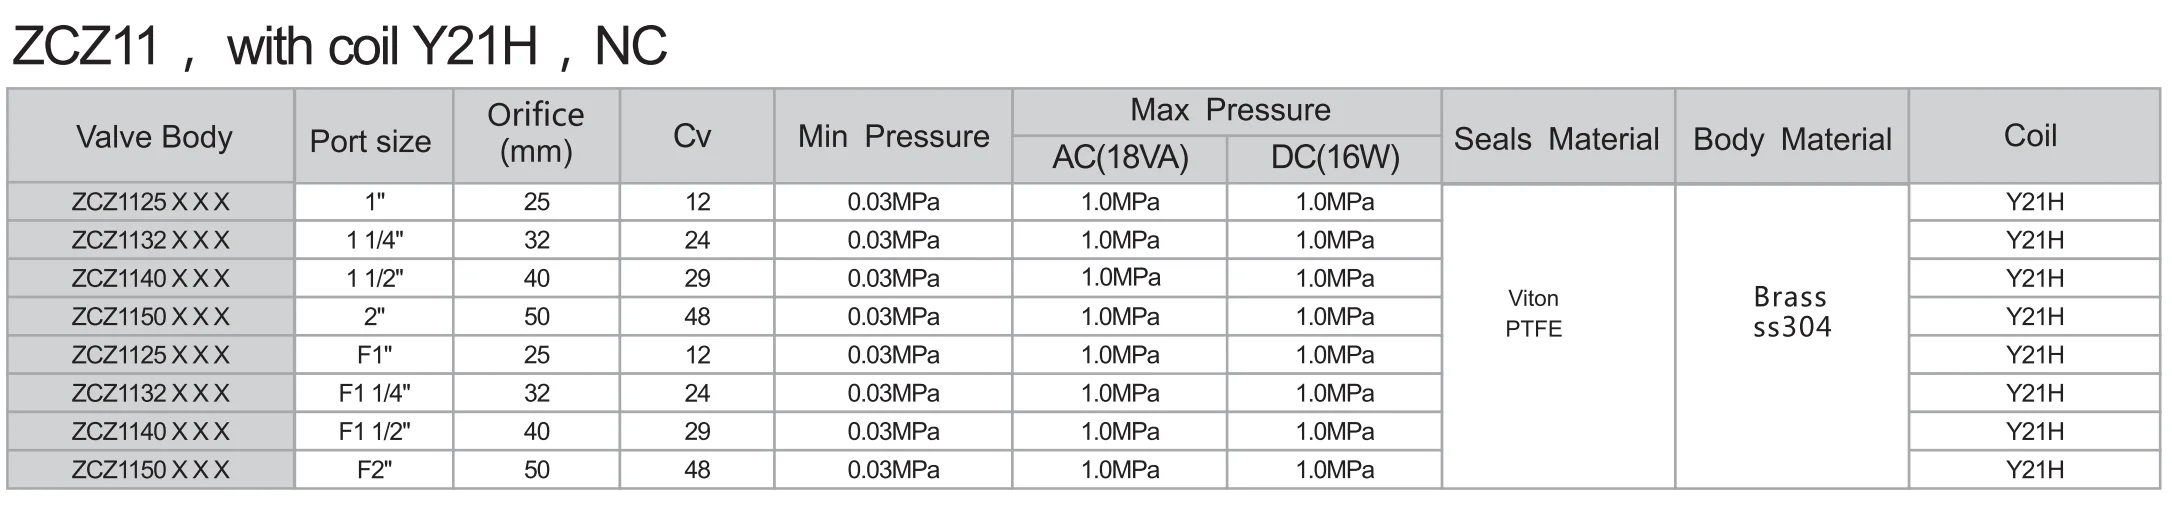 High pressure steam temperature and pressure фото 117